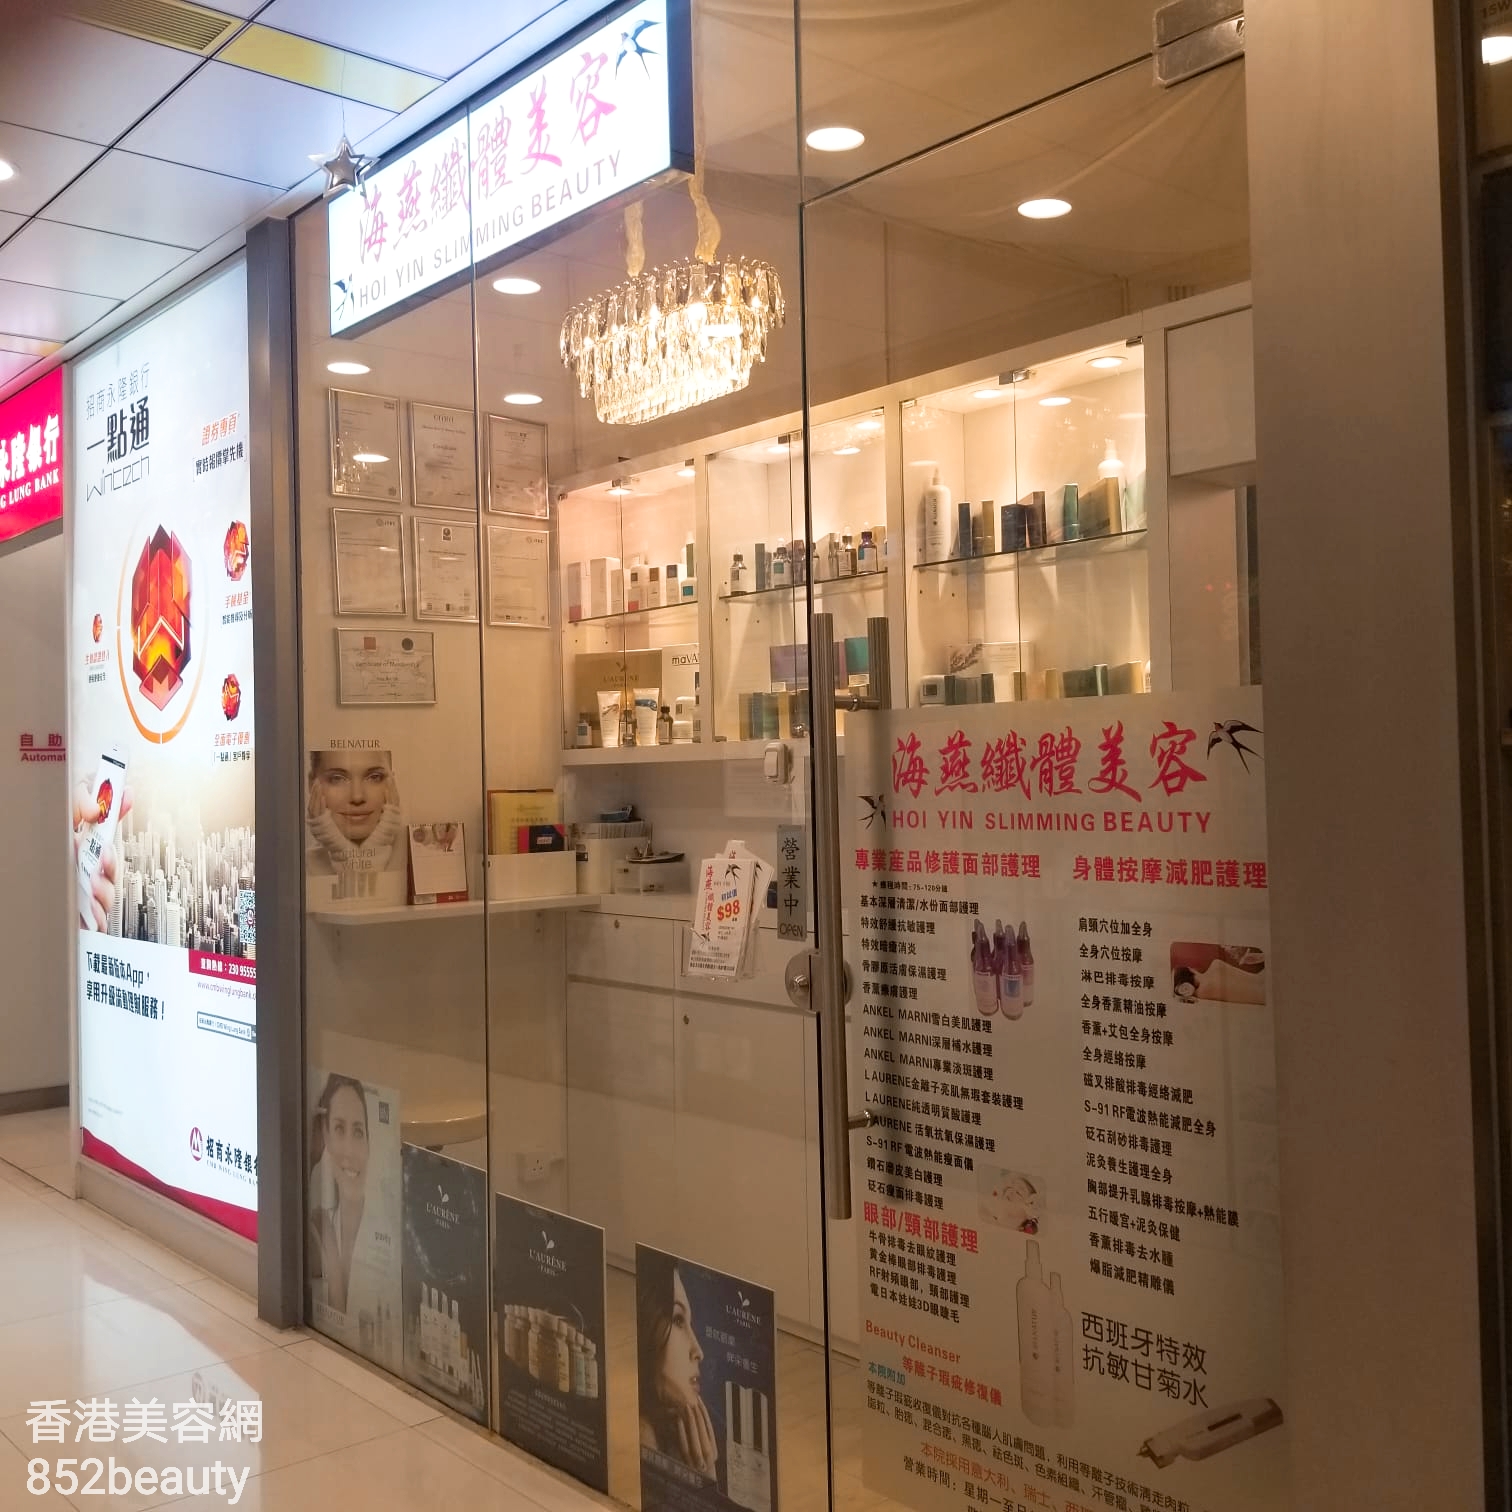 香港美容網 Hong Kong Beauty Salon 美容院 / 美容師: 海燕纎體美容